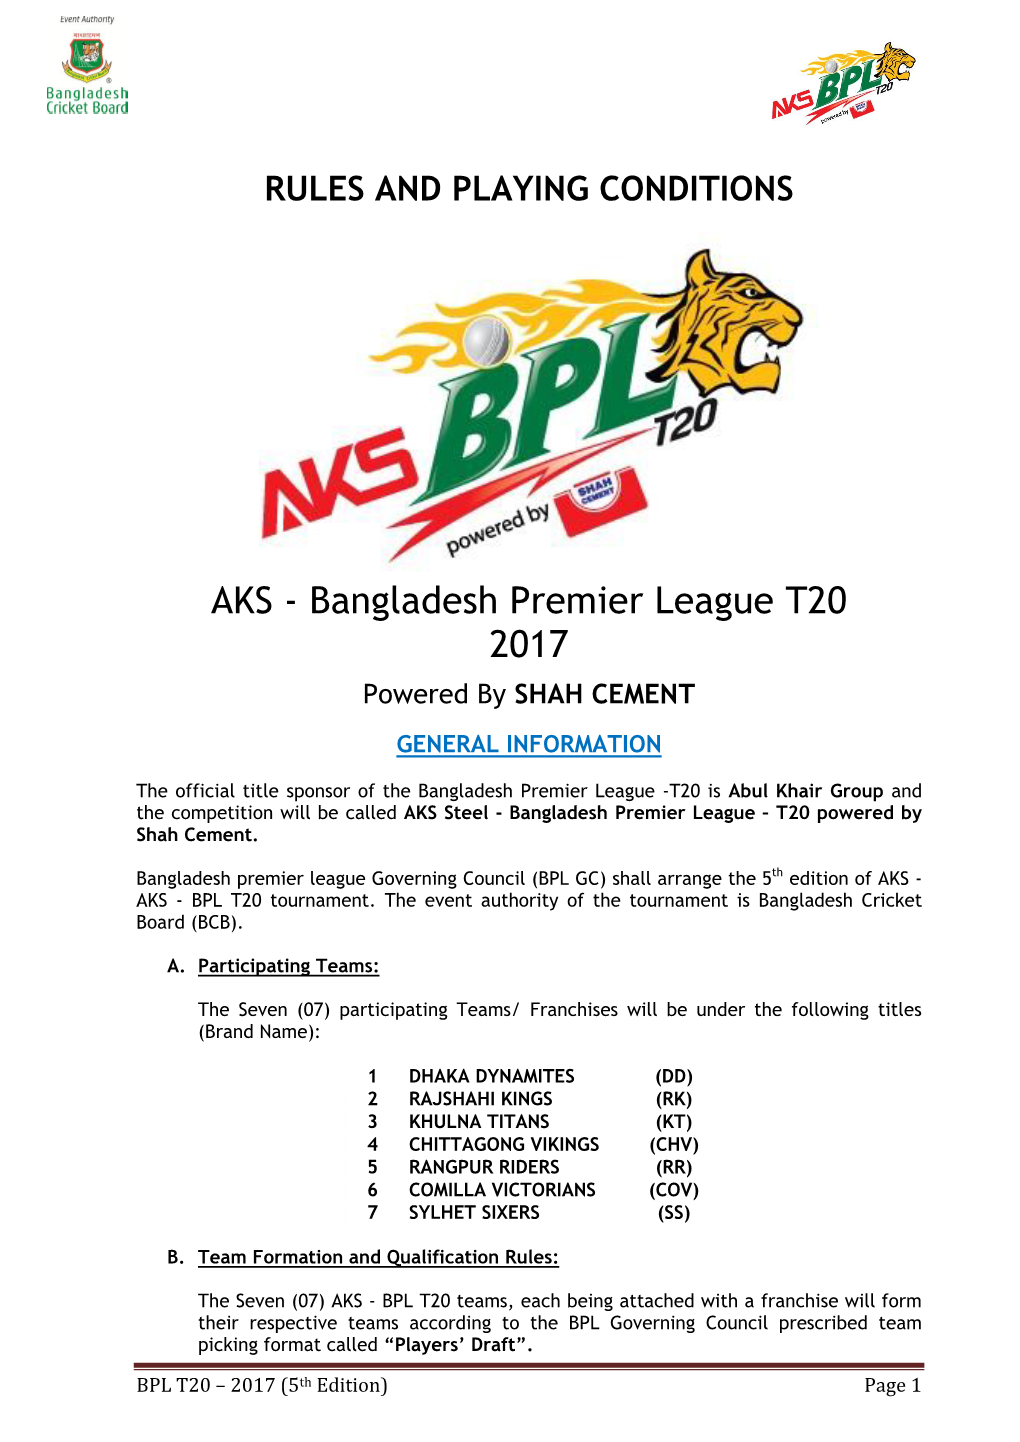 Bangladesh Premier League T20 2017